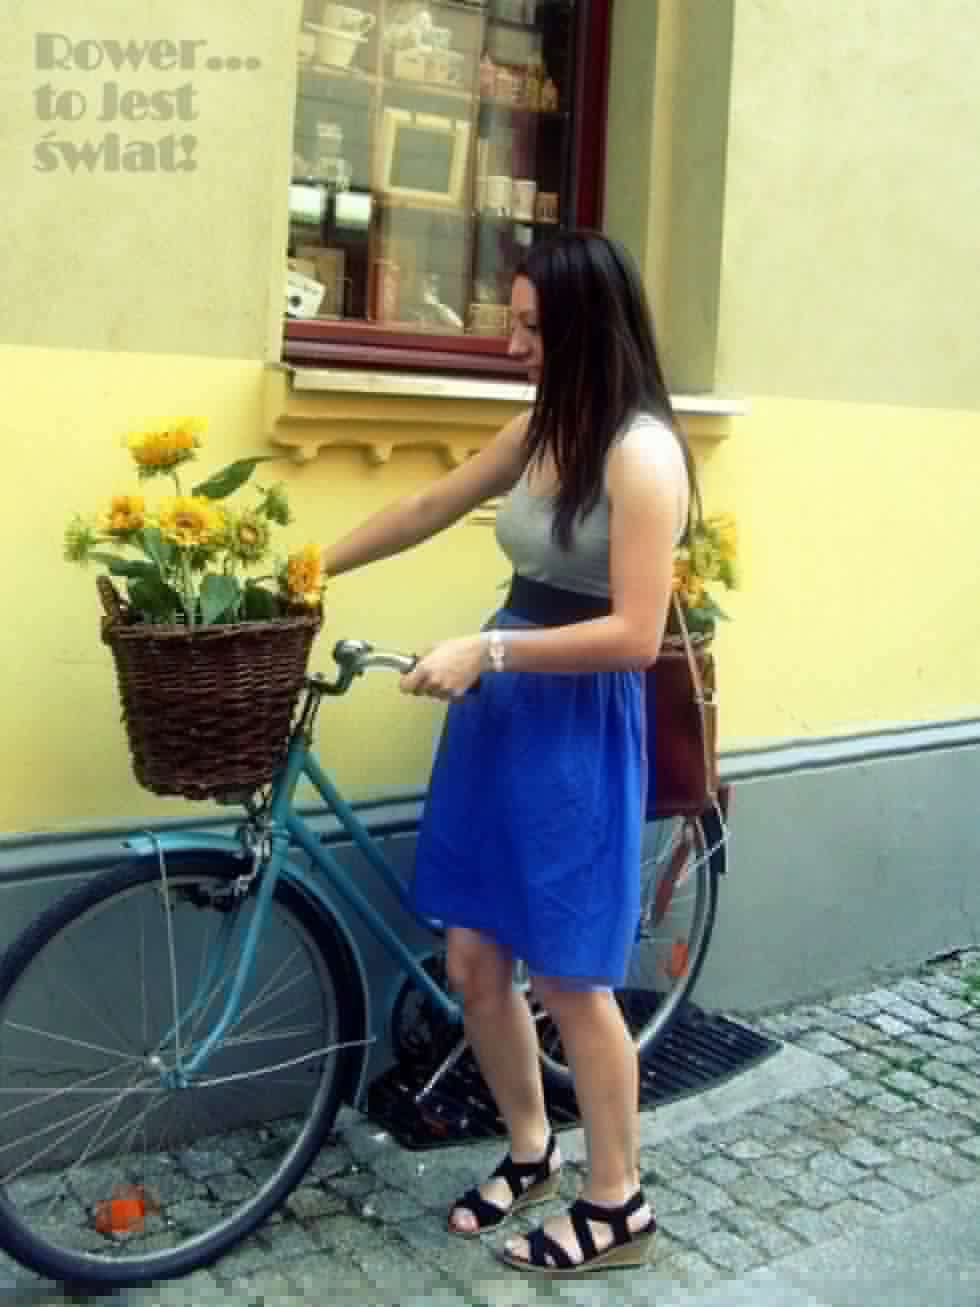  Toruńska starówka i uroczy rower przy jednej z kawiarni